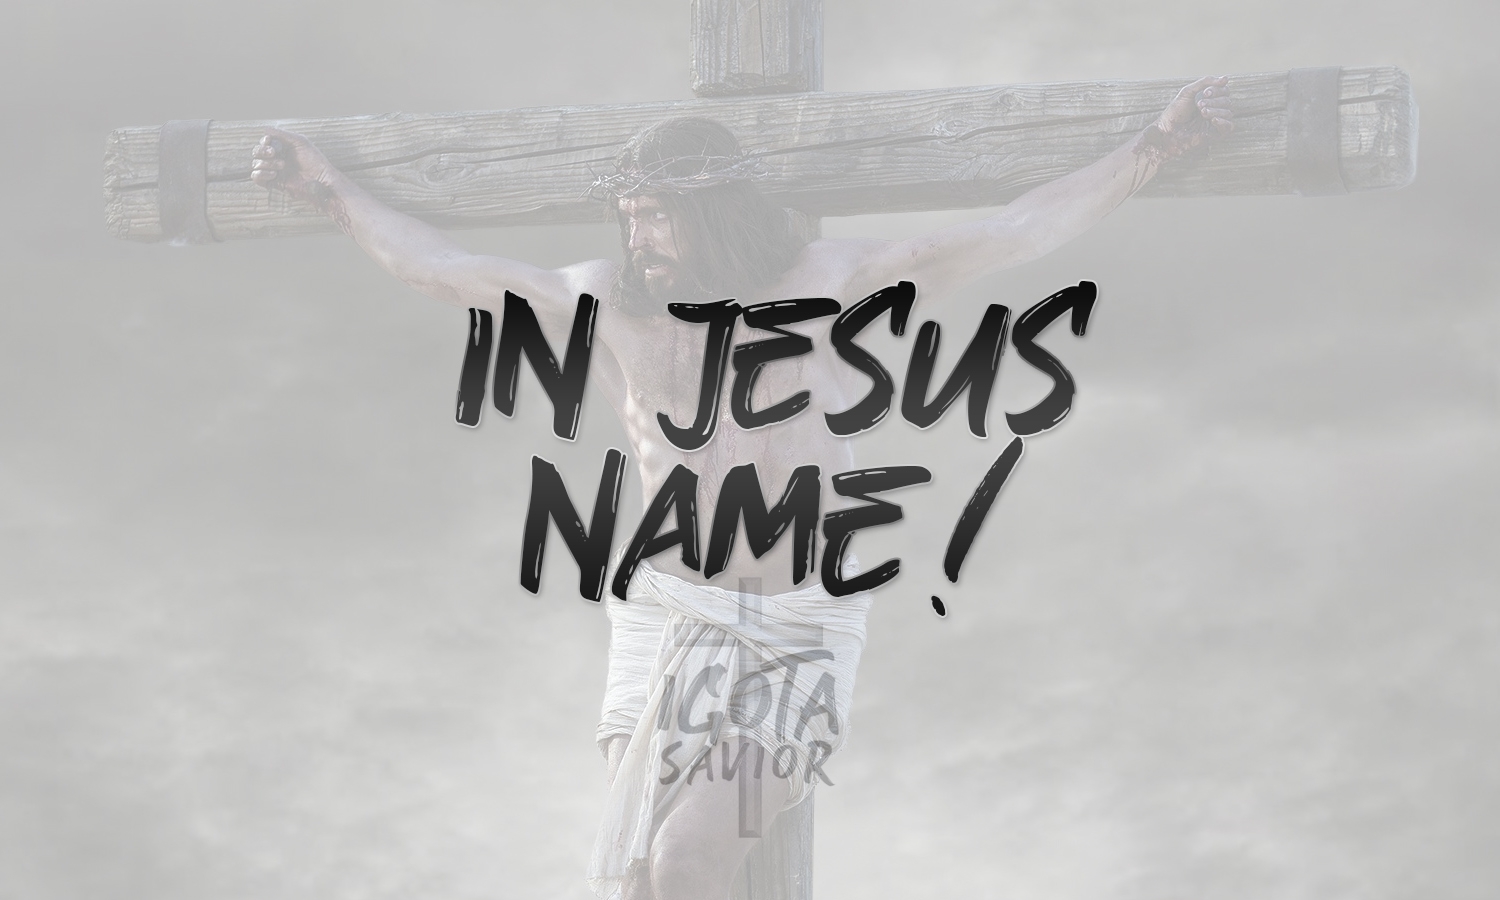 In Jesus Name!